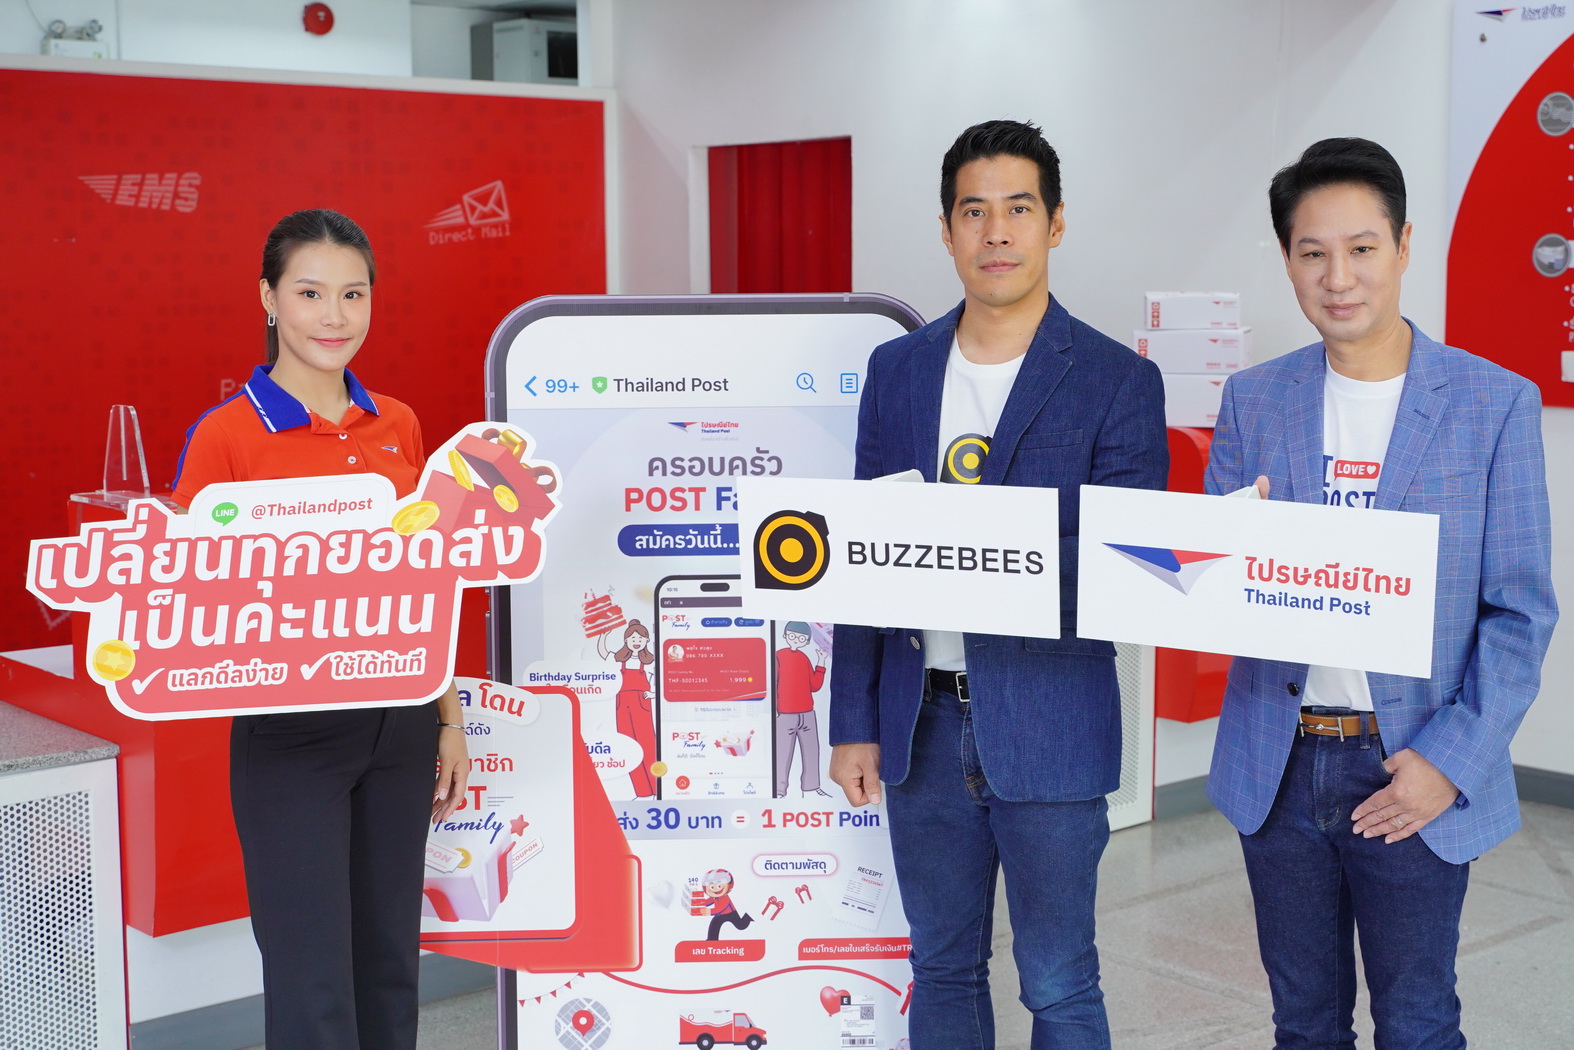 ไปรษณีย์ไทย มั่นใจ บัซซี่บีส์ เสริมแกร่งด้าน CRM Loyalty & Engagement พัฒนาระบบแลกแต้ม มุ่งสร้างสัมพันธ์กับลูกค้าในระยะยาวอย่างยั่งยืน